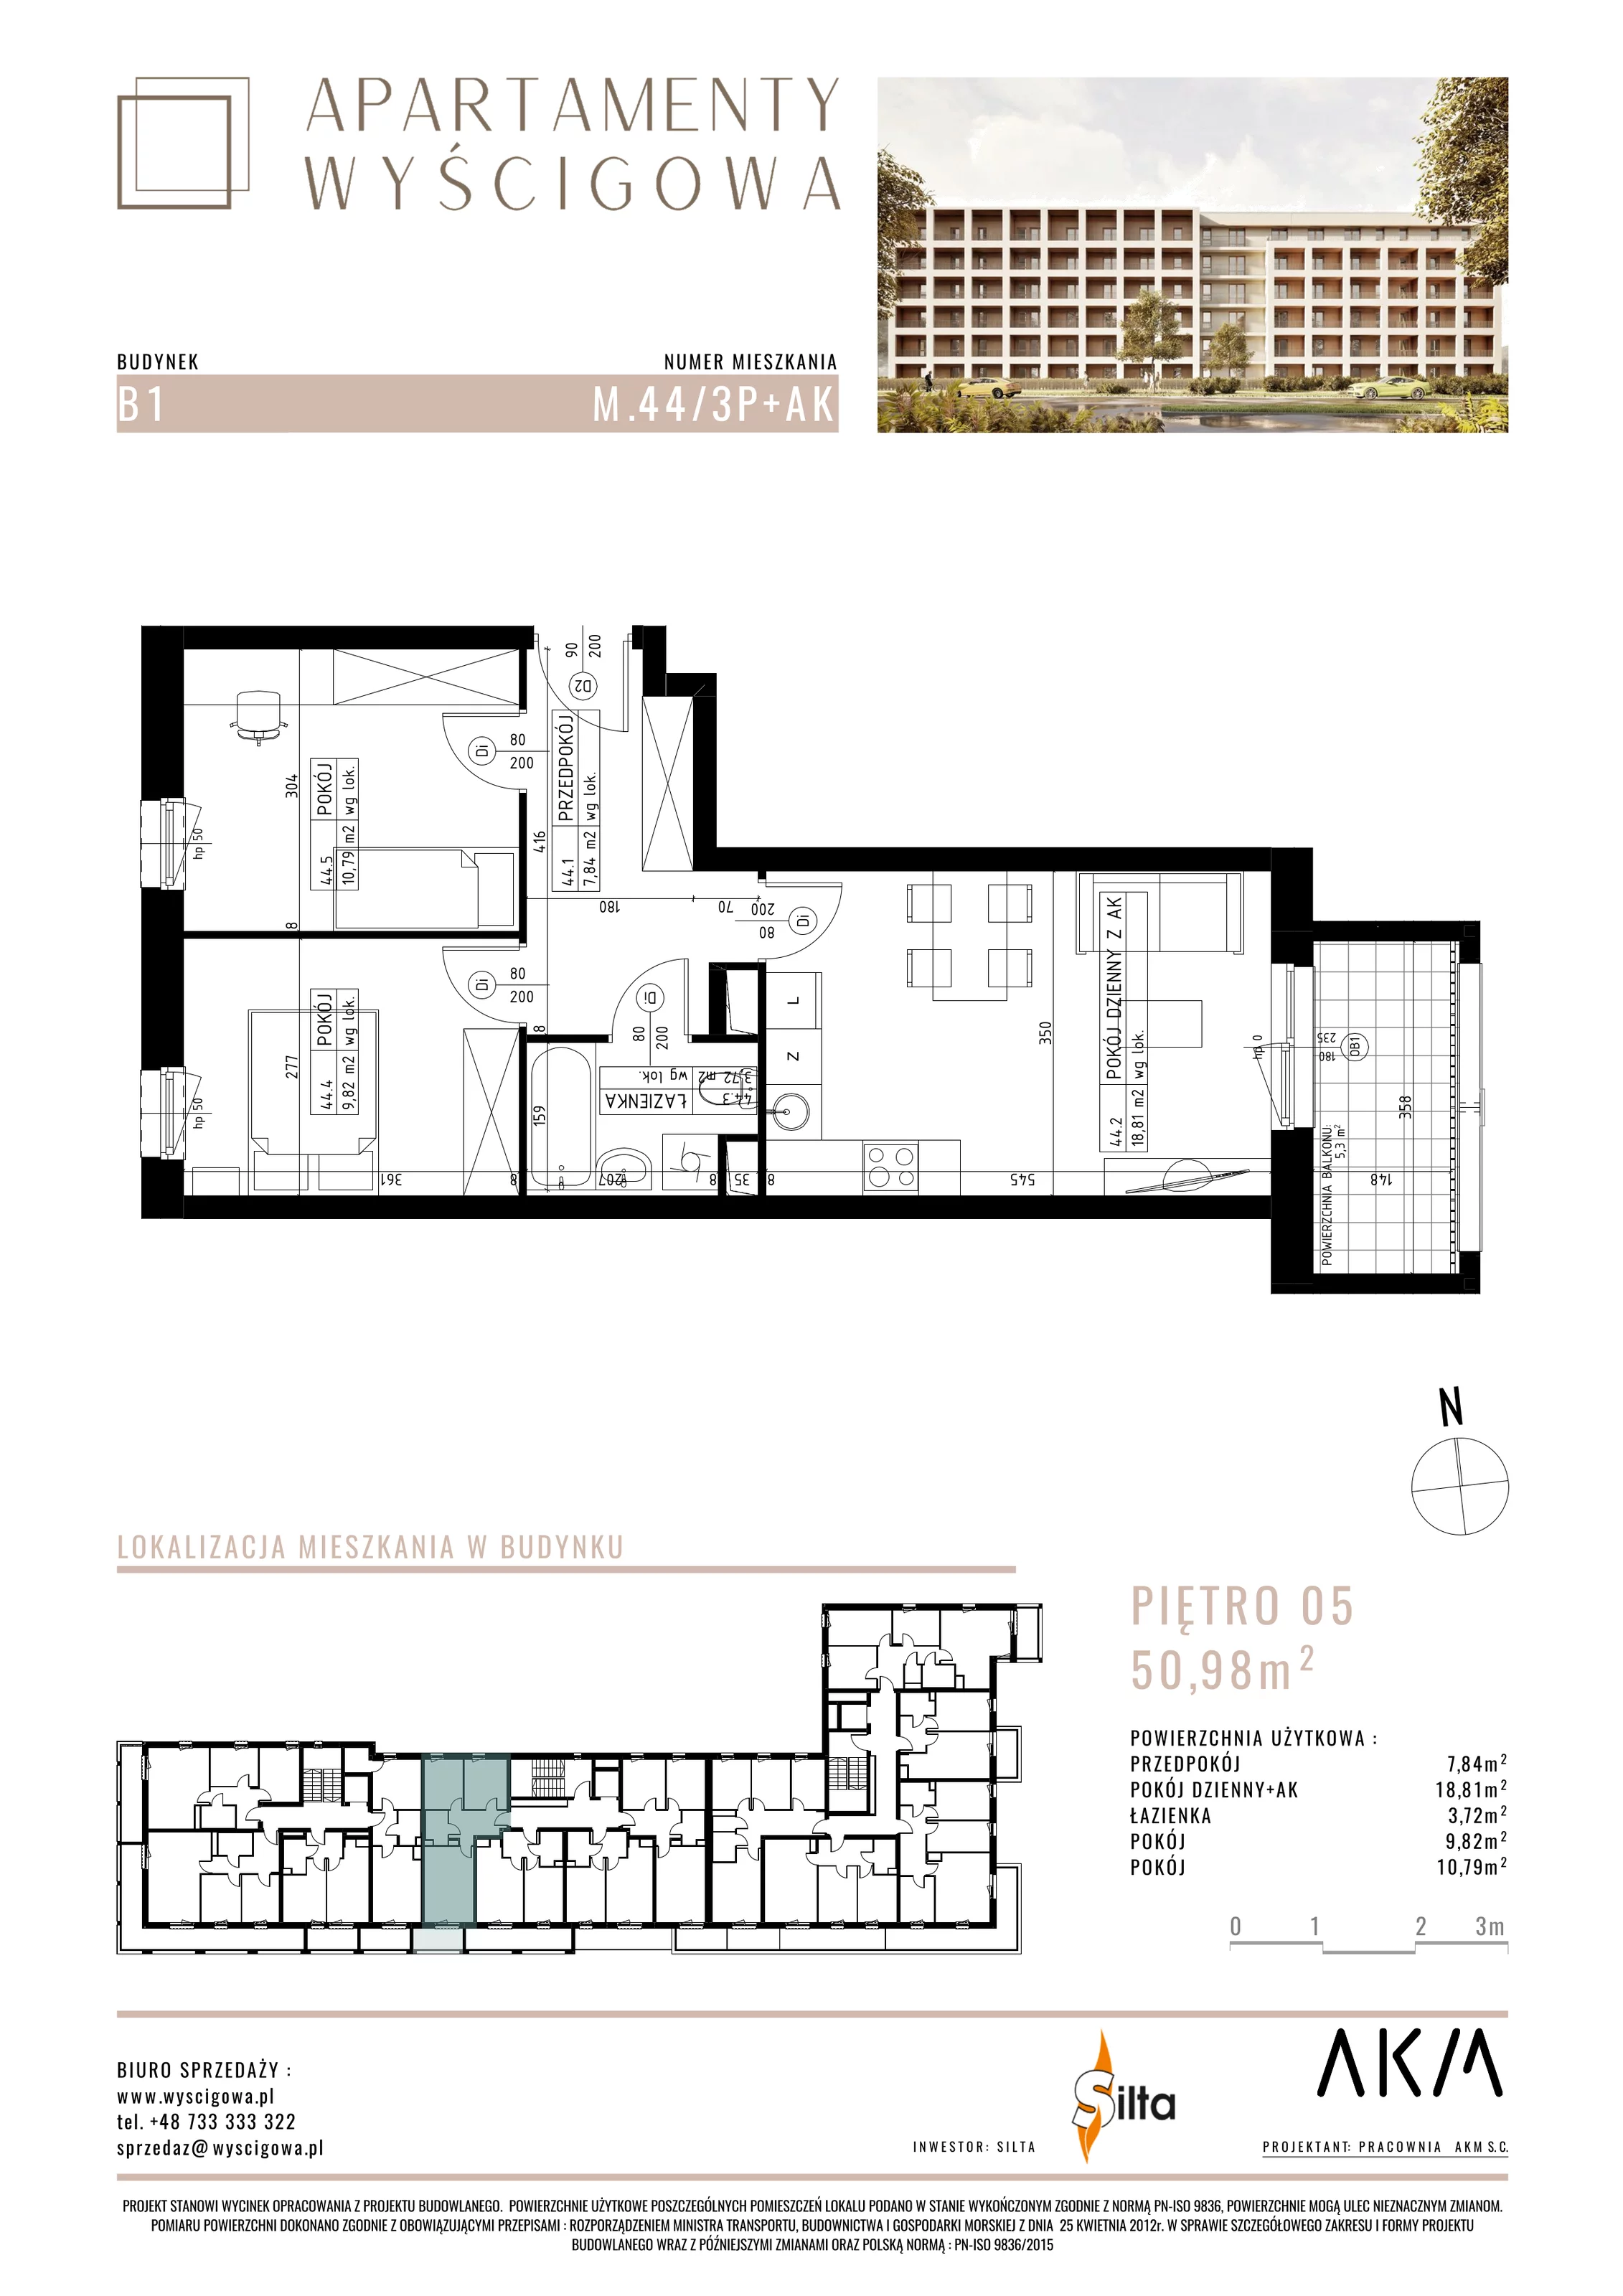 Mieszkanie 50,98 m², piętro 5, oferta nr B1.M44, Apartamenty Wyścigowa, Lublin, Dziesiąta, Dziesiąta, ul. Wyścigowa